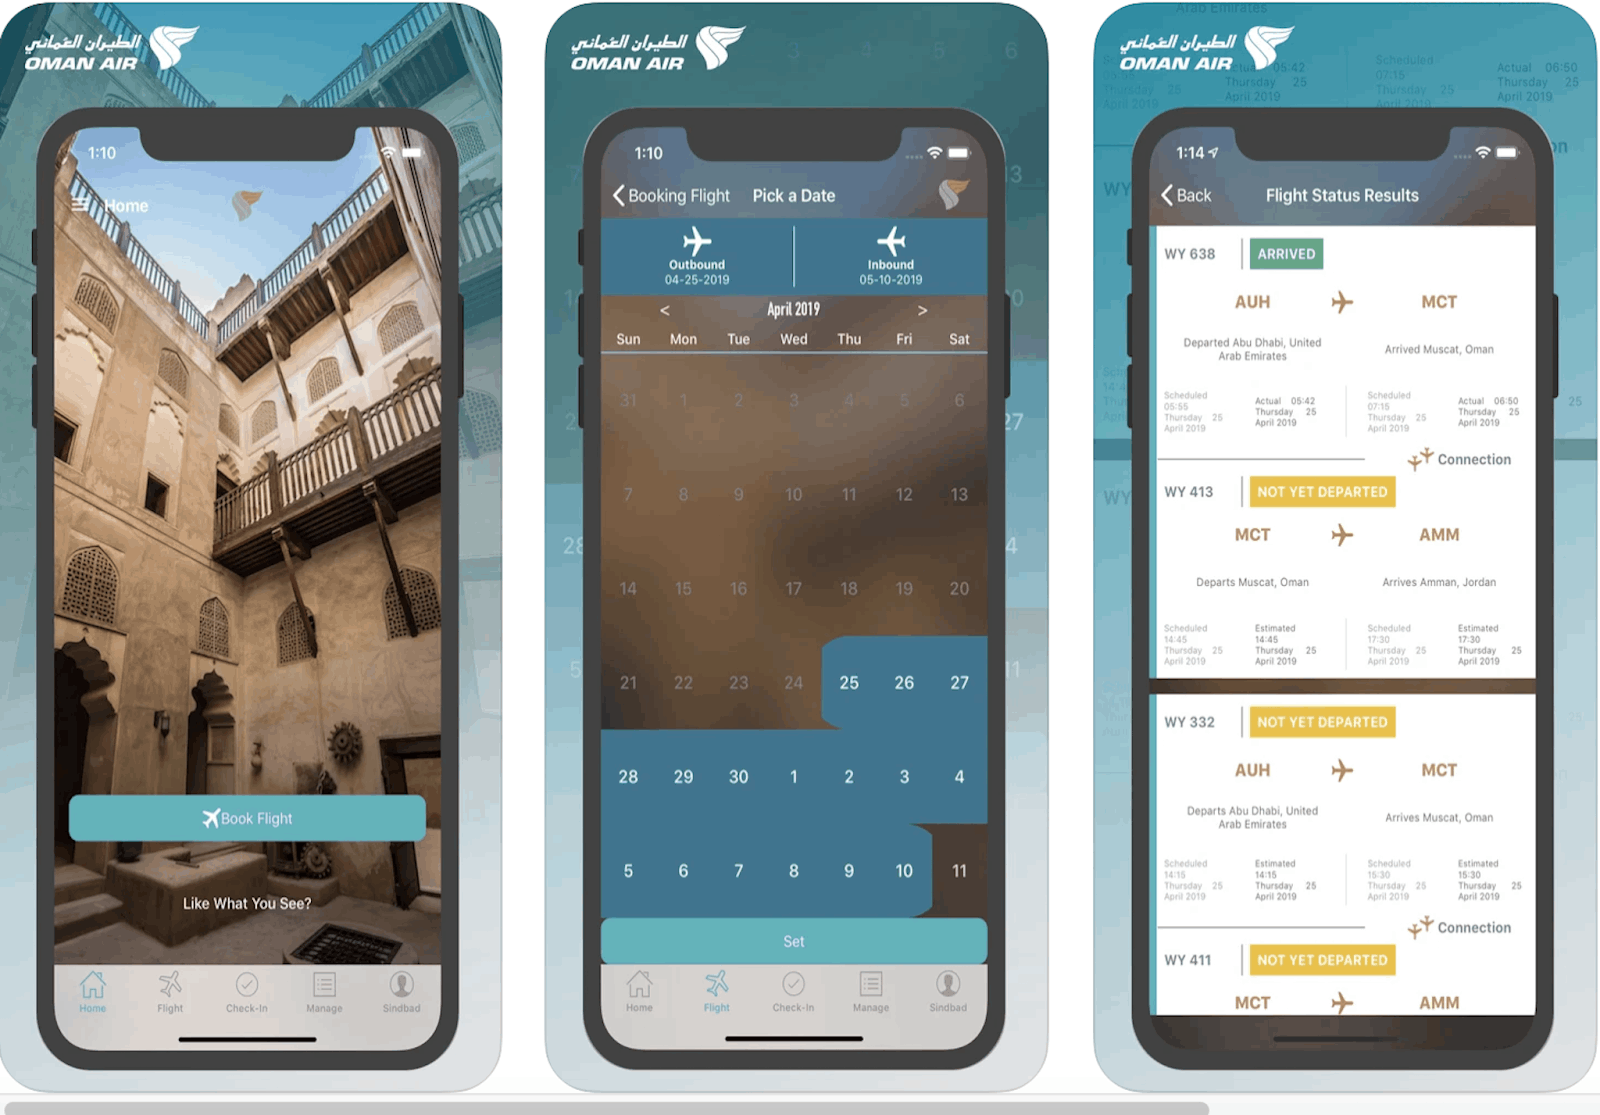 Oman Air App - Book a New Flight